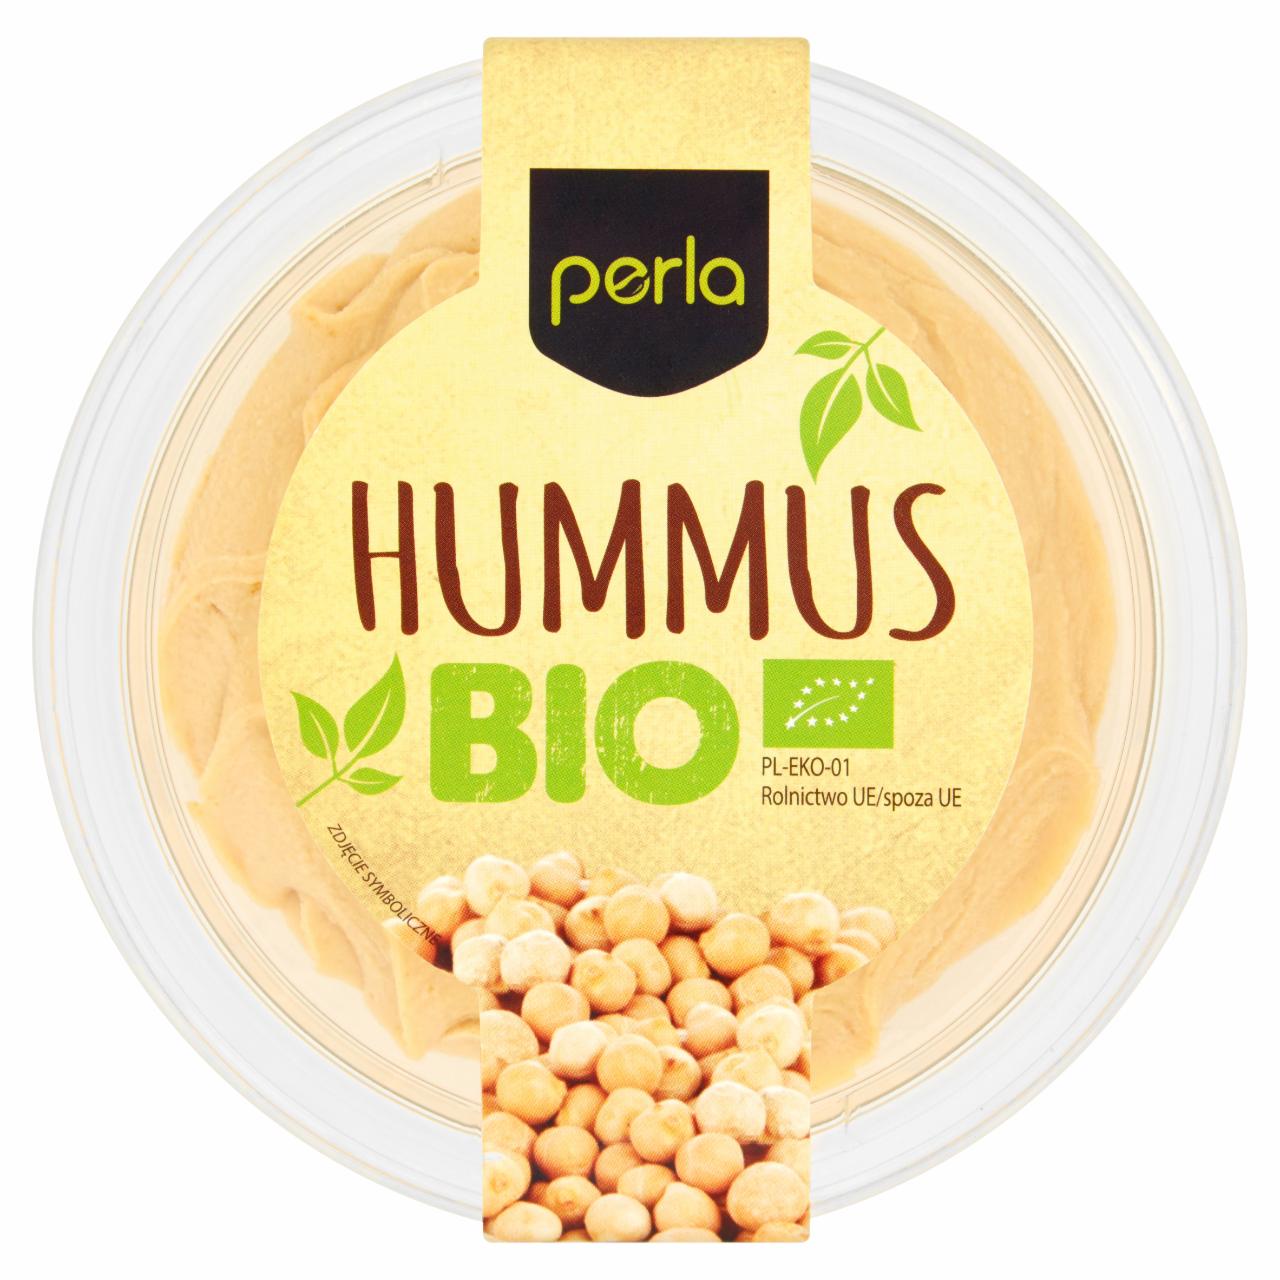 Zdjęcia - Perla Hummus Bio 160 g